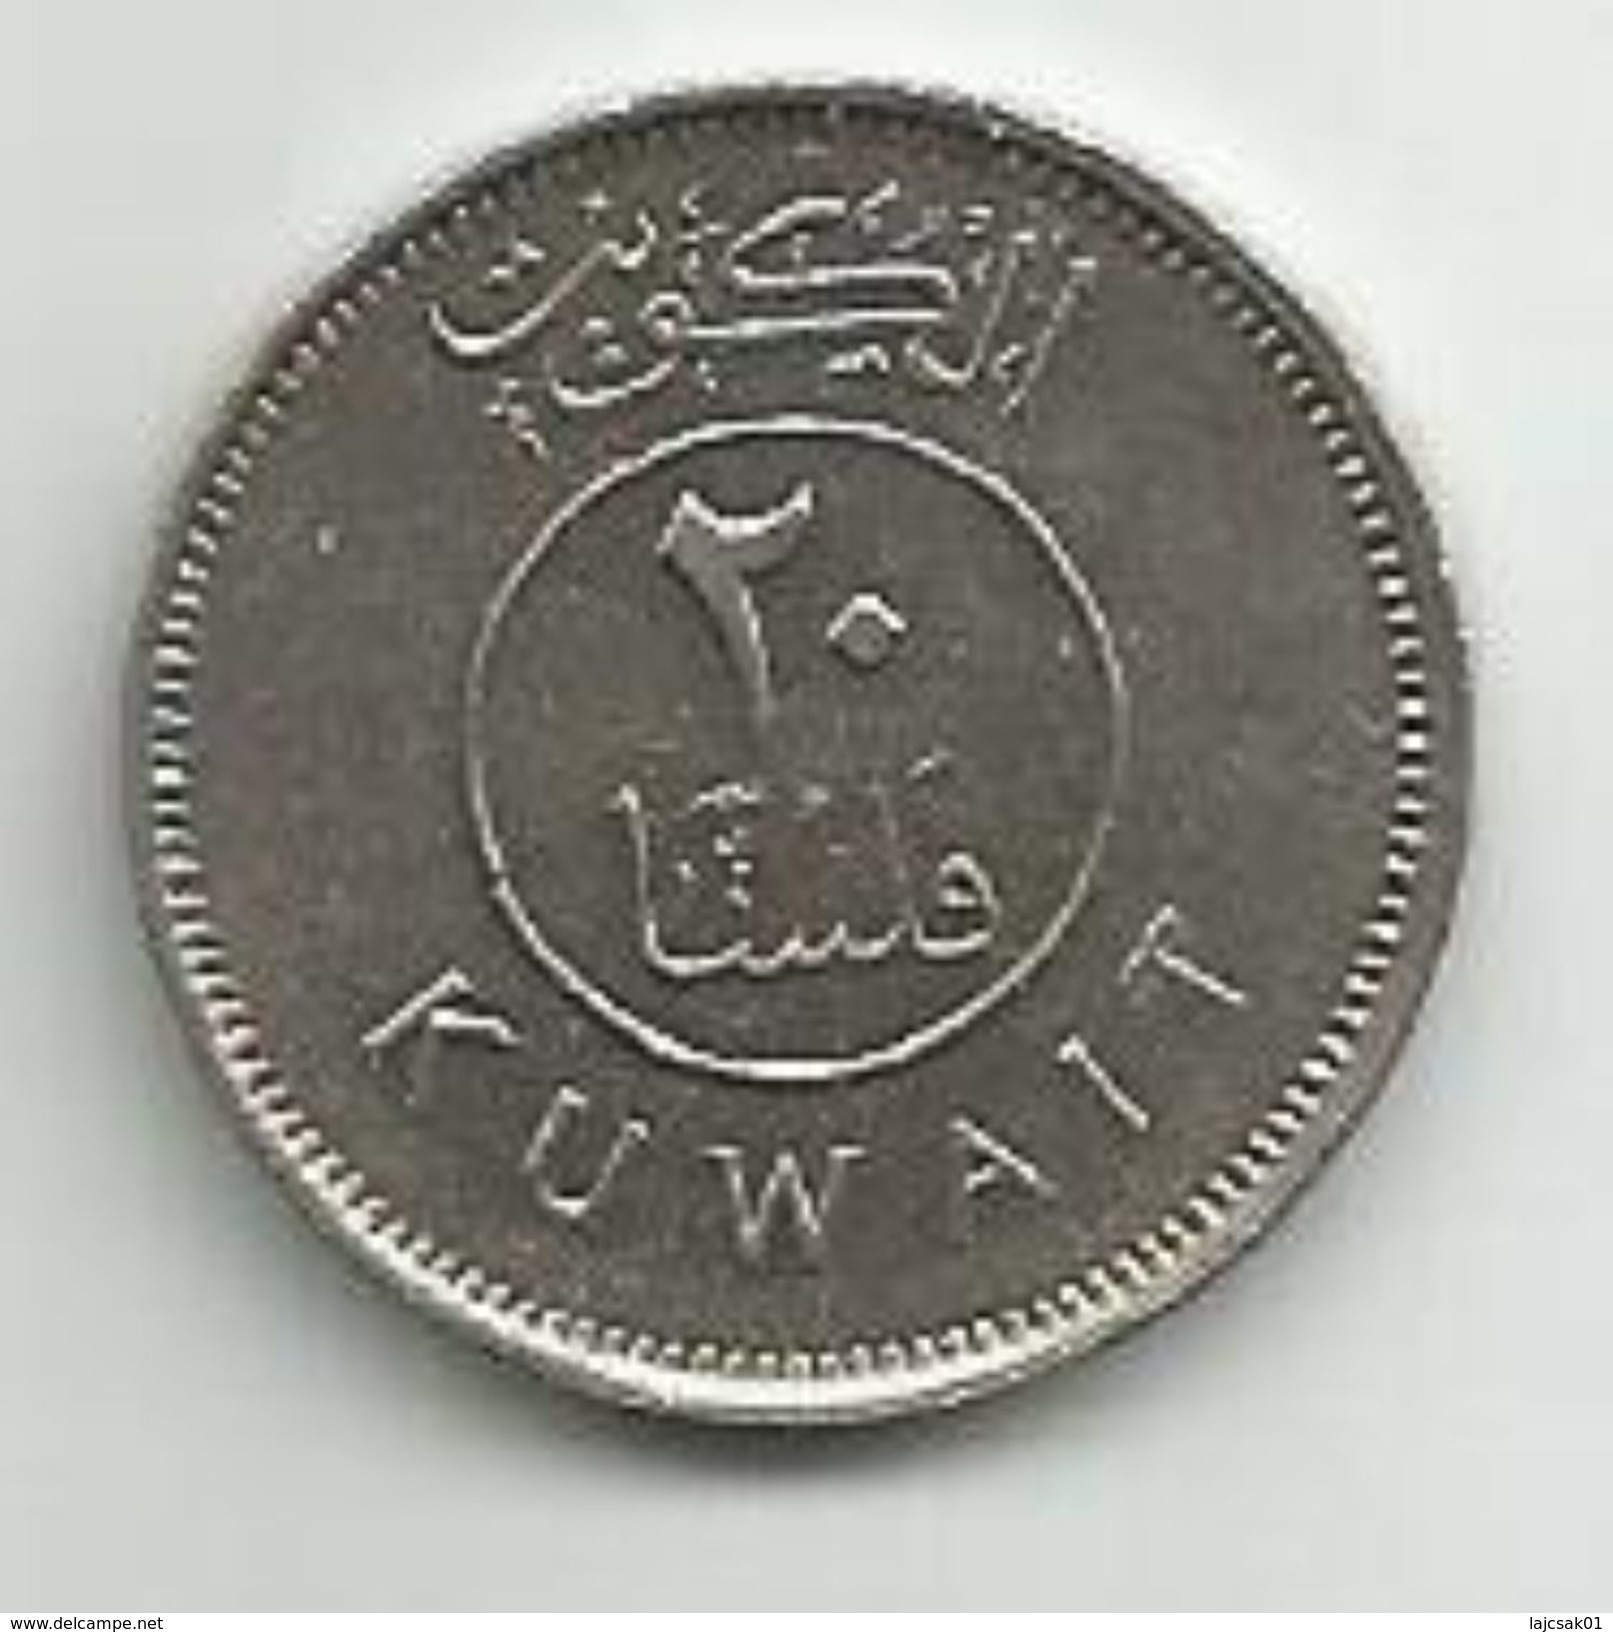 Kuwait 20 Fils 1983. - Koweït